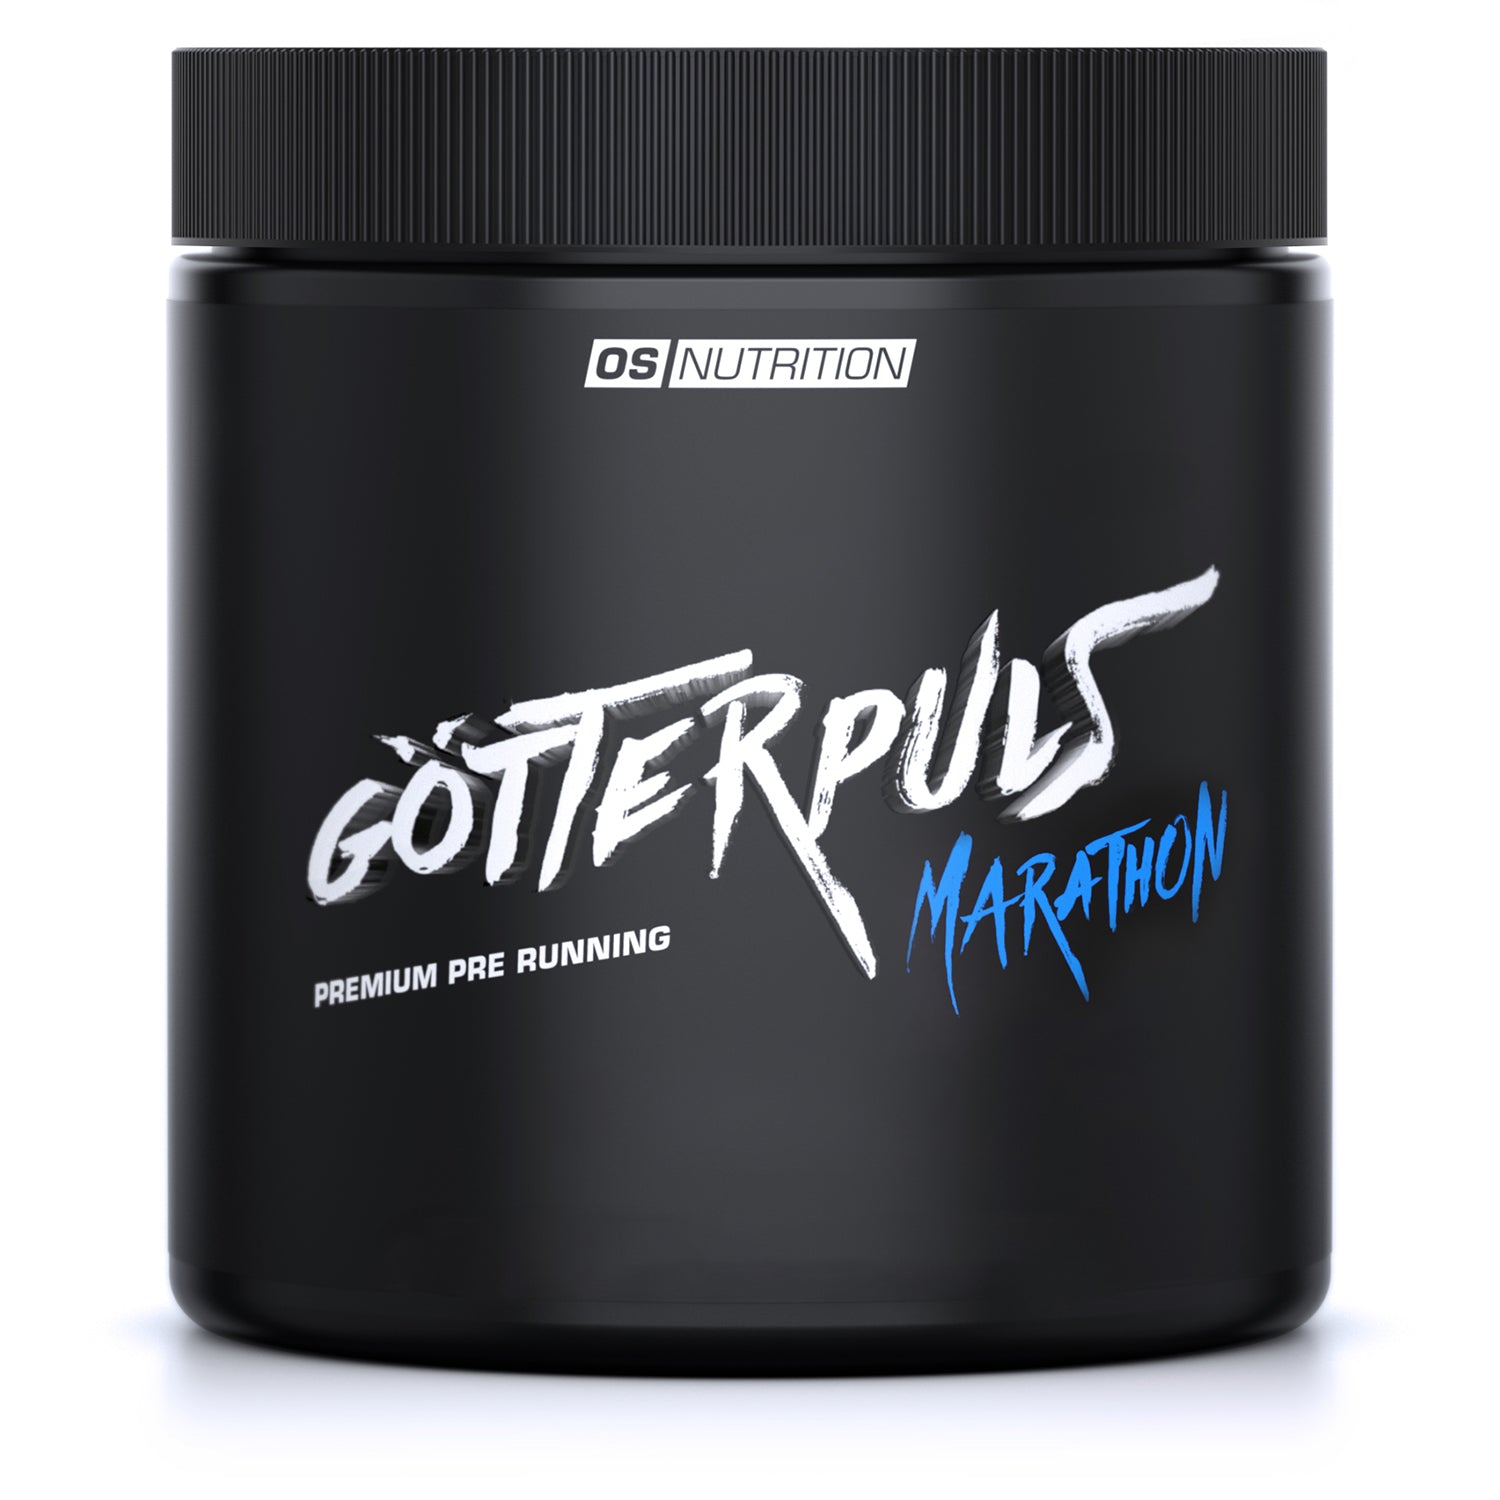 Götterpuls® Marathon - Premium Pre Running 400 g - OS NUTRITION